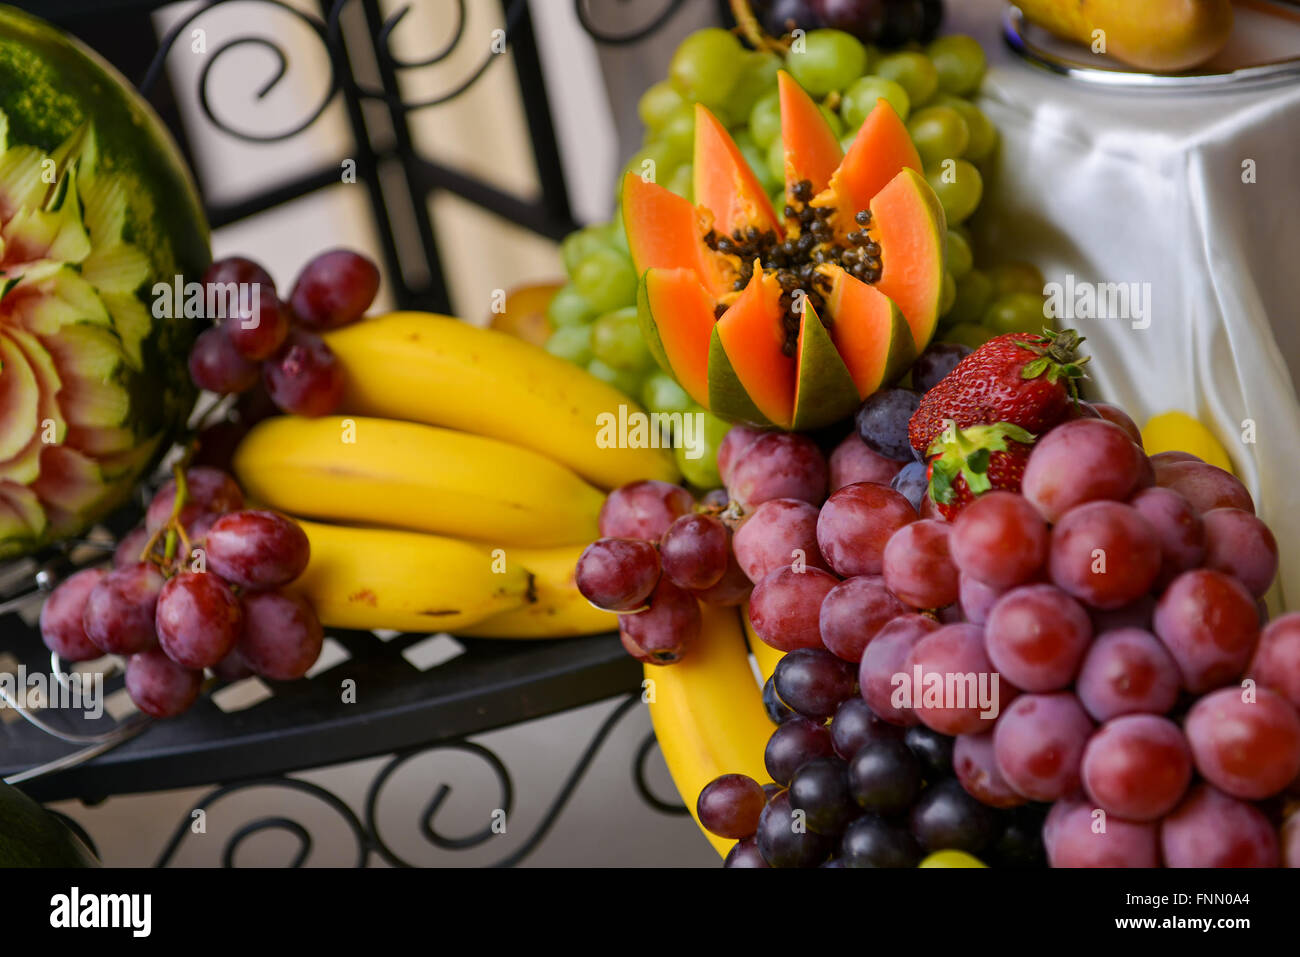 Les raisins, les bananes, les avocats, les fraises placé sur une table Banque D'Images